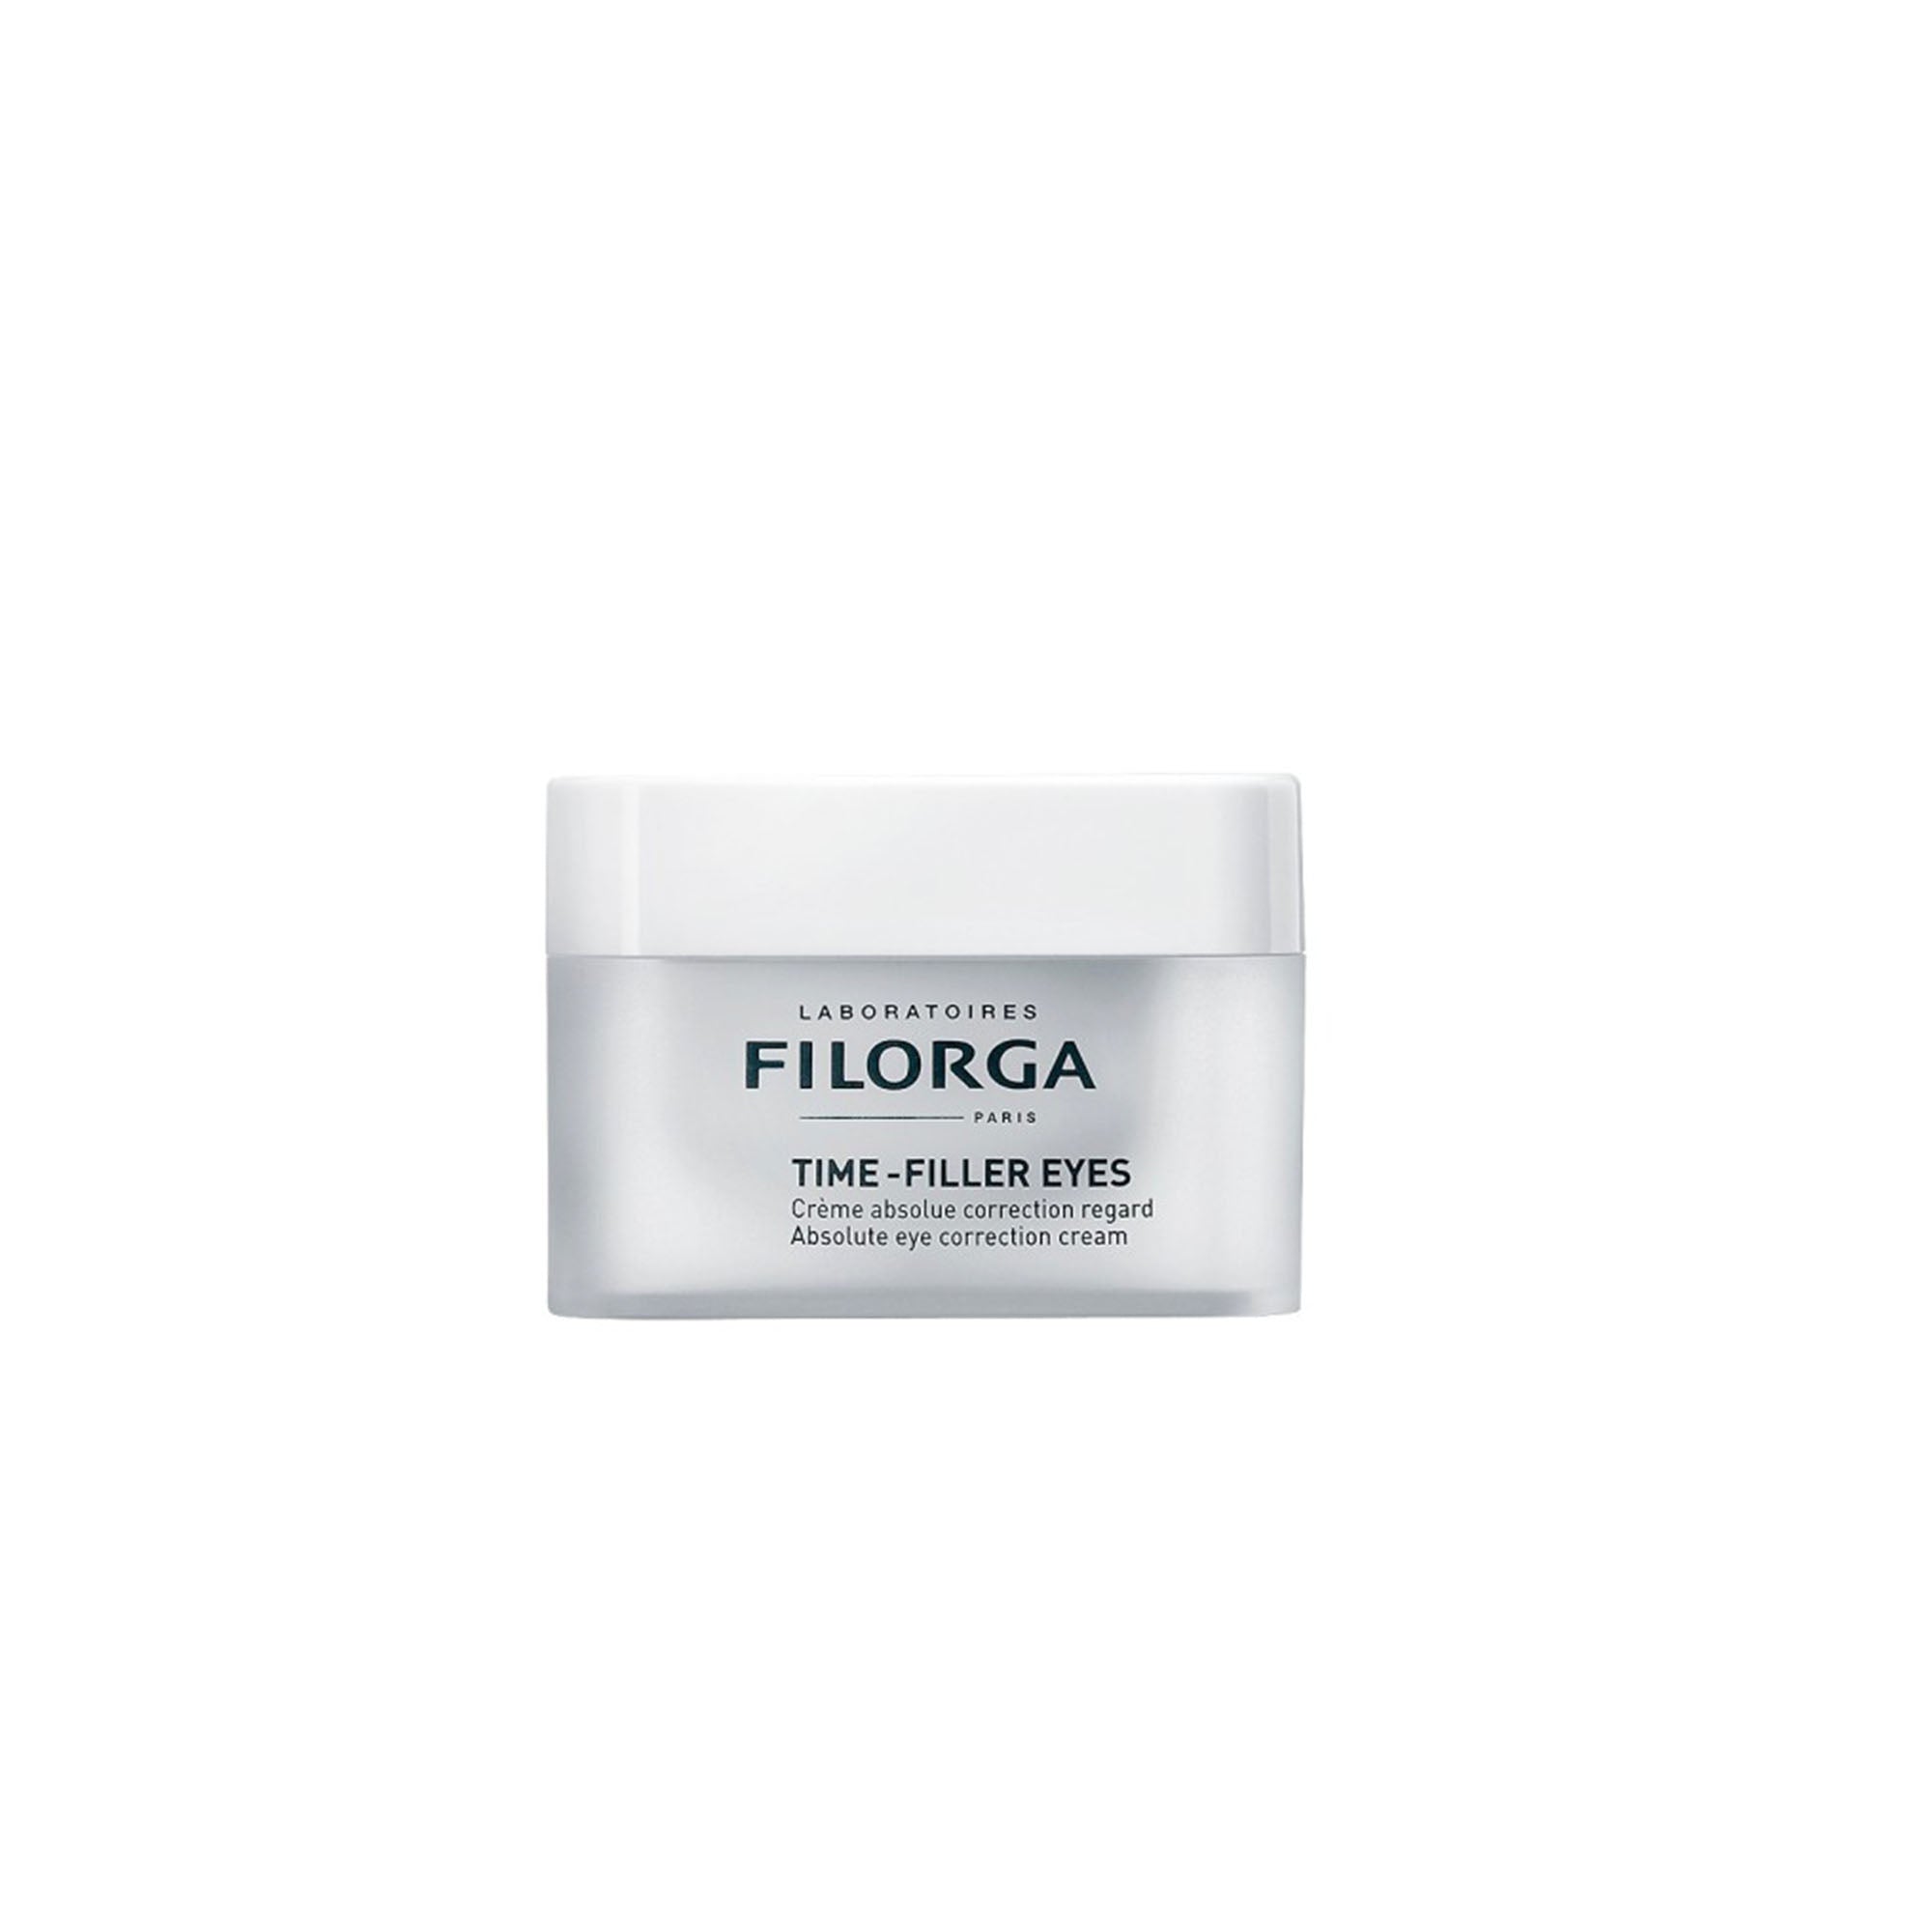 Filorga Anti-Wrinkle Firming Eye Cream | FILORGA TIME-FILLER EYES ABSOLUTE EYE CORRECTION CREAM 15ML